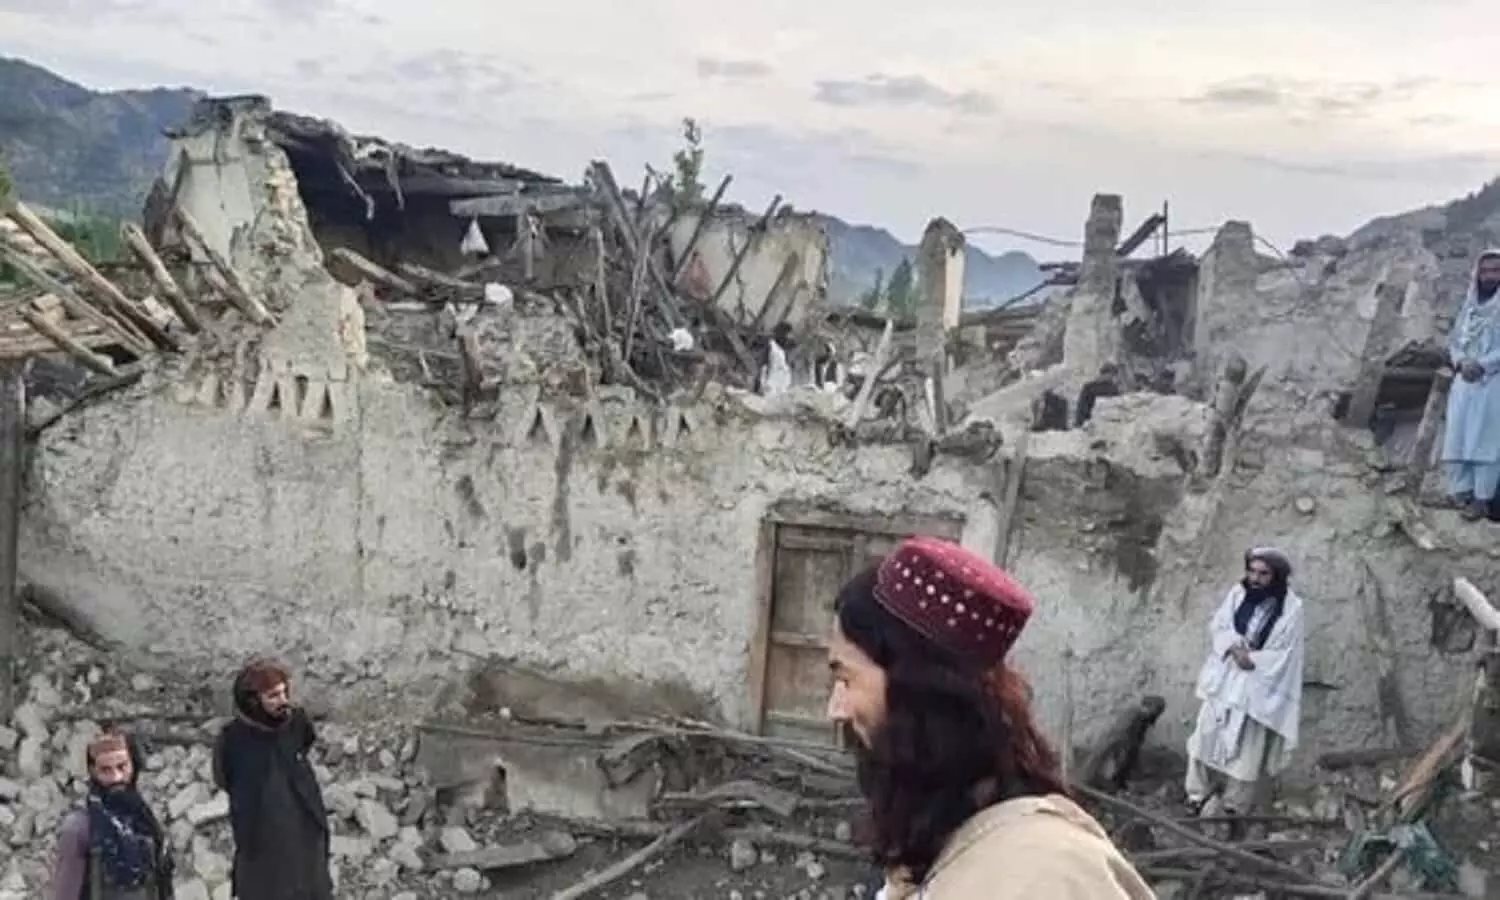 Afghanistan Earthquake: हिल गया अफगानिस्तान, 6.1 तीव्रता के भूकंप से तबाही, 250 लोगो के मौत की खबर